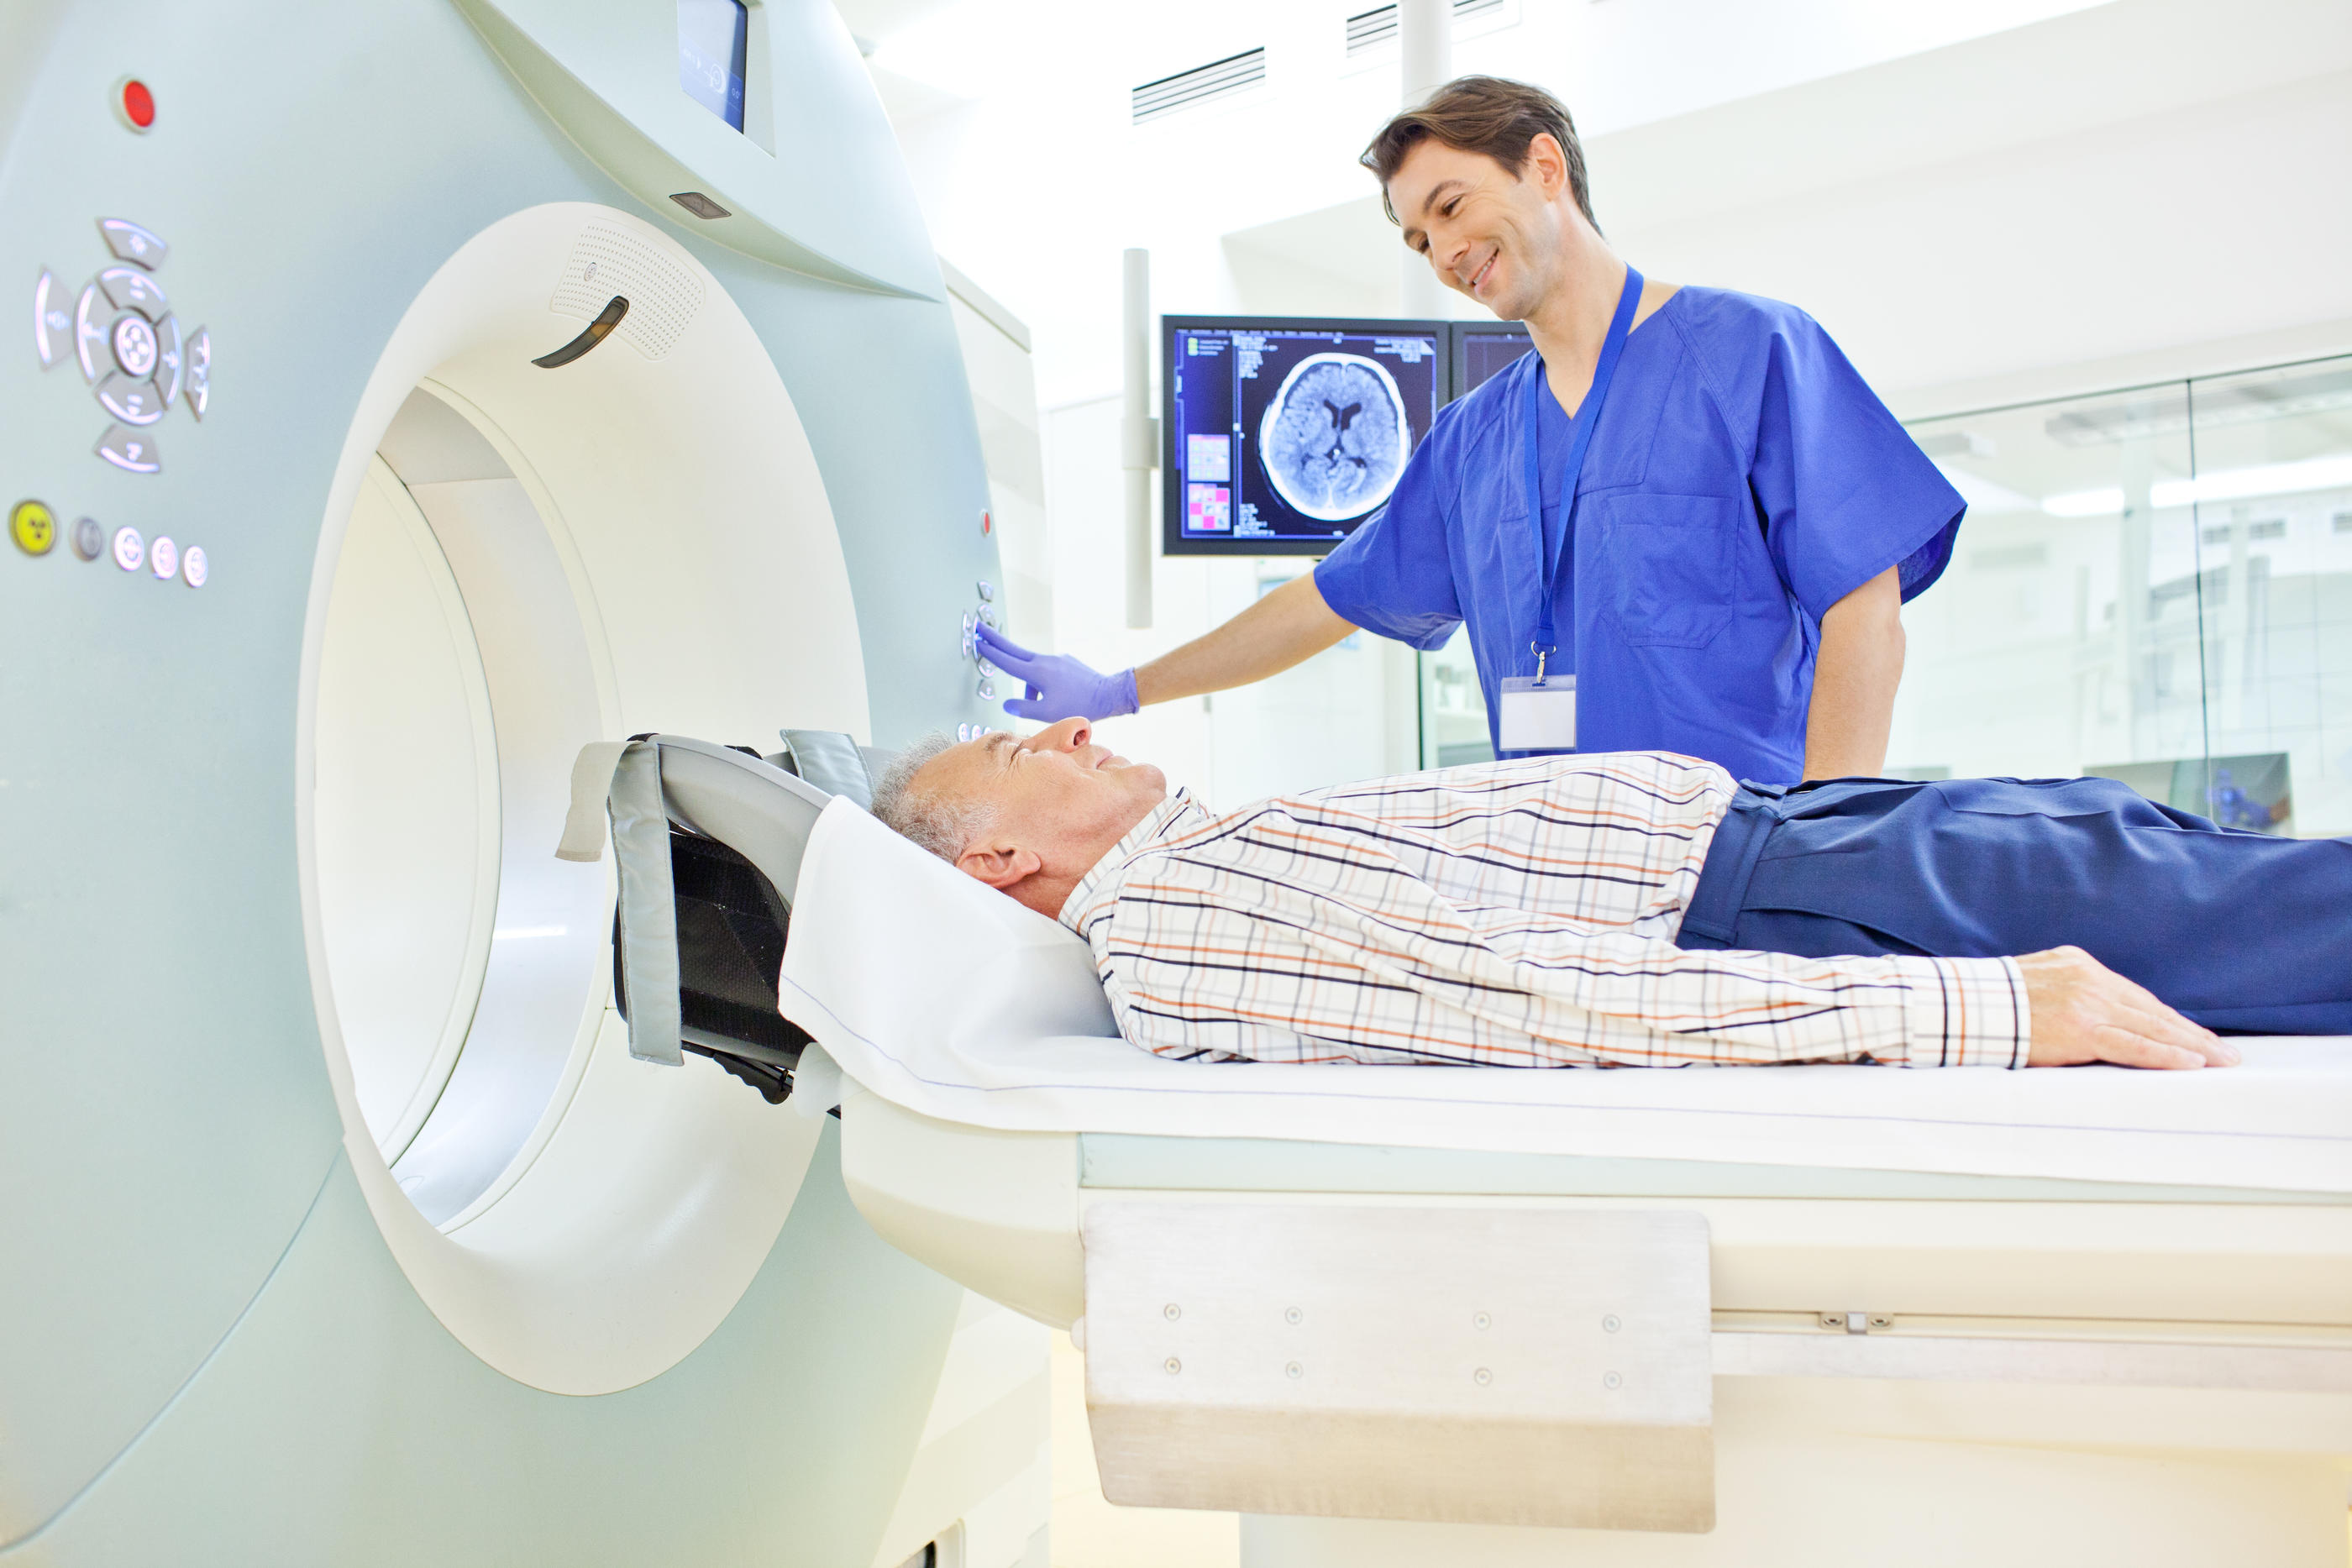 Les patients, éveillés pendant l’intervention, sont allongés dans un système d’imagerie par résonance magnétique (IRM), pour localiser la cible (Illustration). IStock/Luis Alvarez